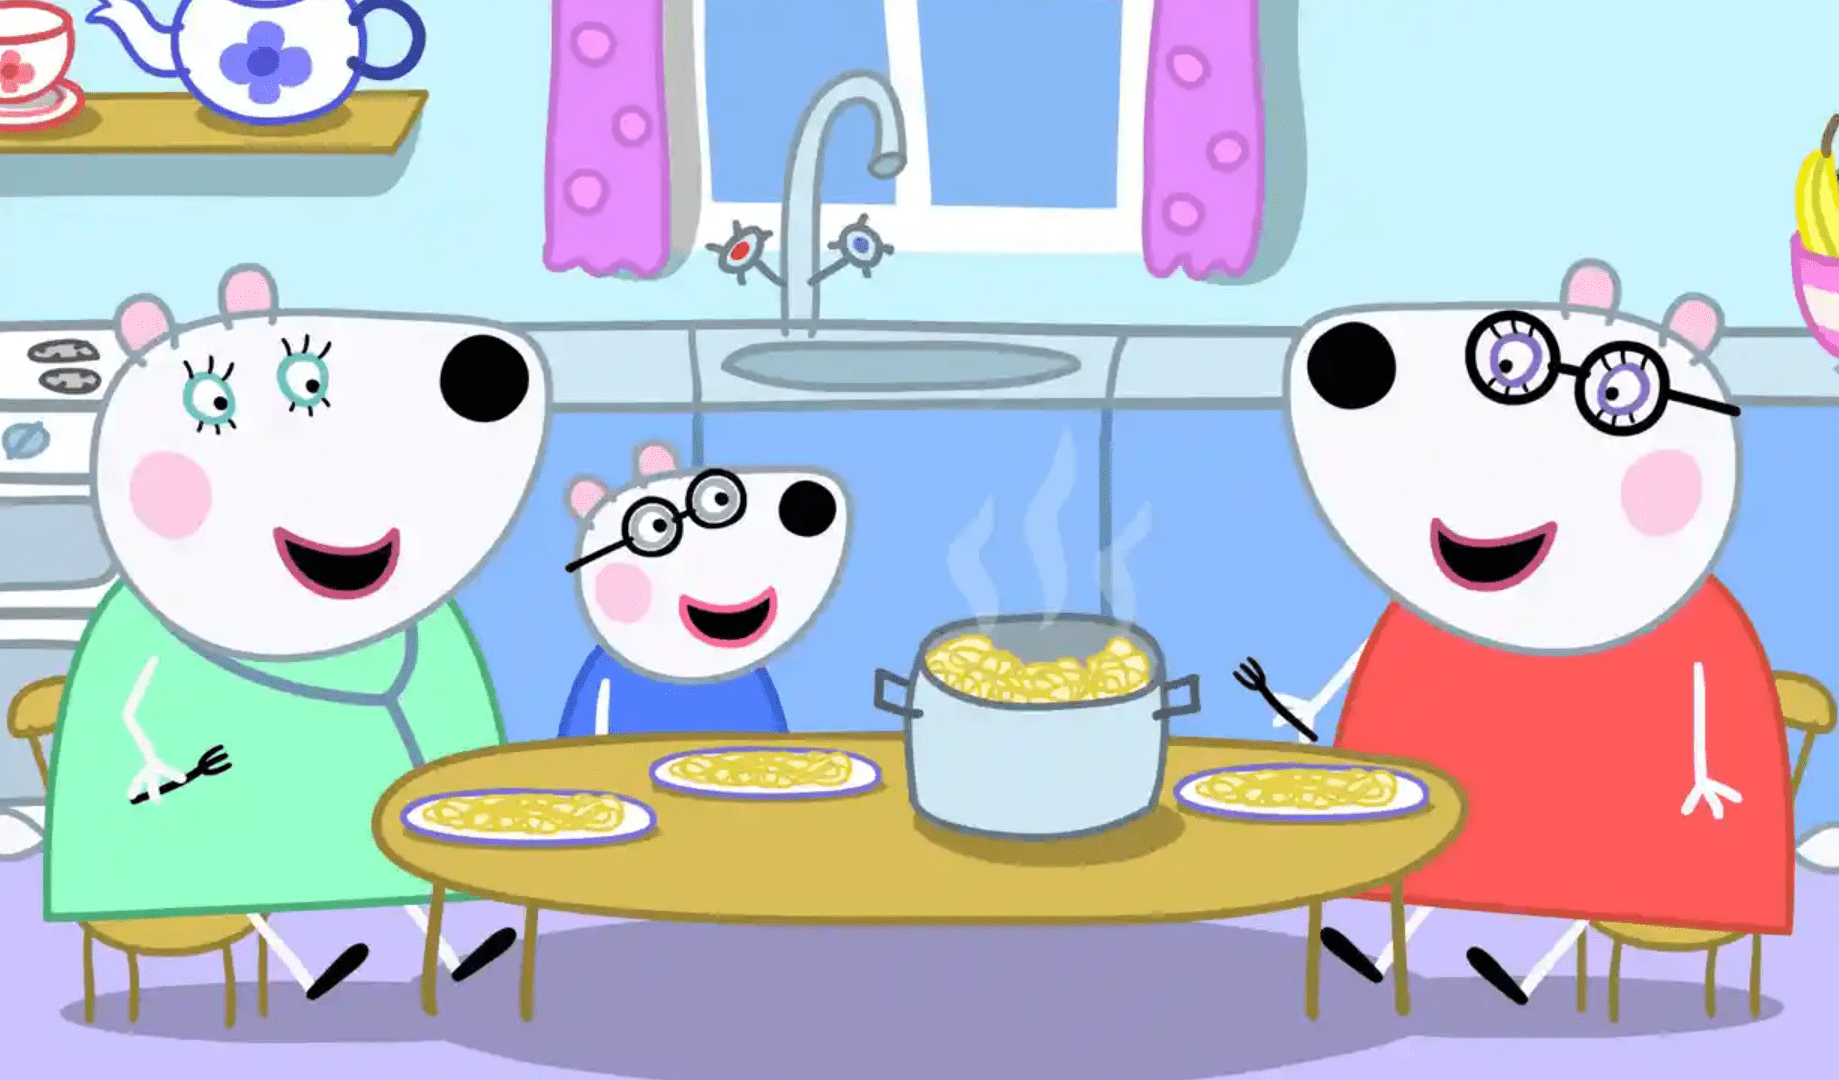 Una famiglia con due mamme arriva nel cartone animato di Peppa Pig e diventa subito una questione politica